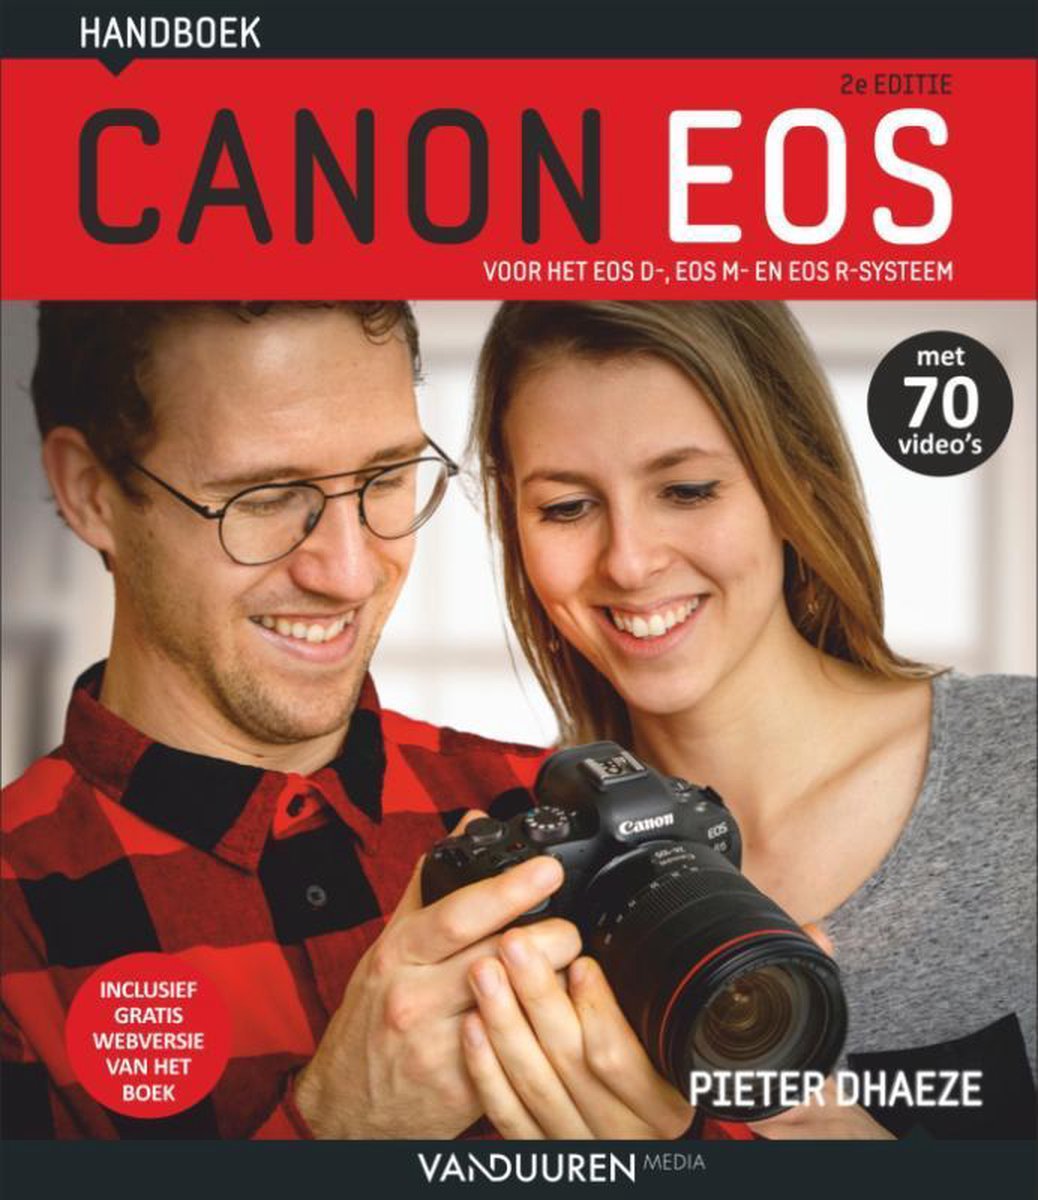 Handboek Canon EOS - Pieter Dhaeze